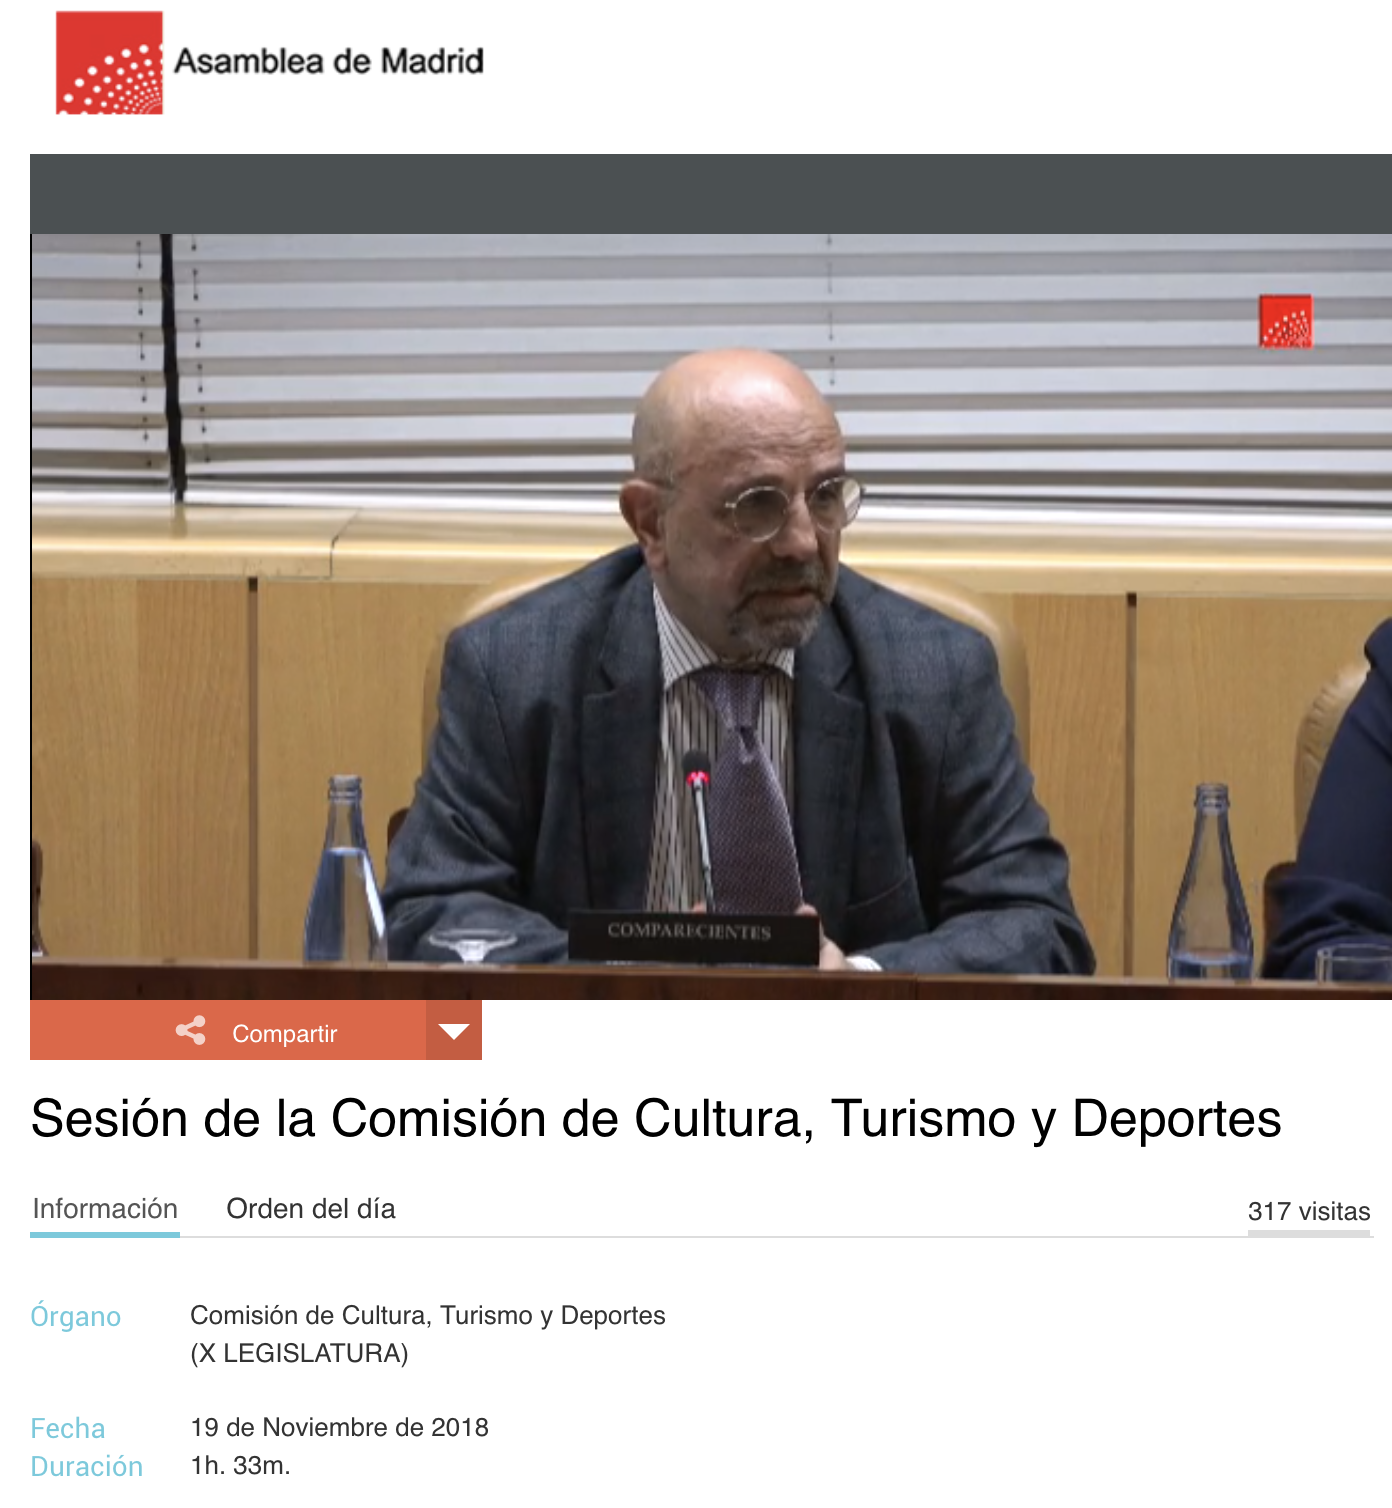 sesion_de_la_comision_de_cultura_turismo_y_deportes_-19_de_noviembre_de_2018.png